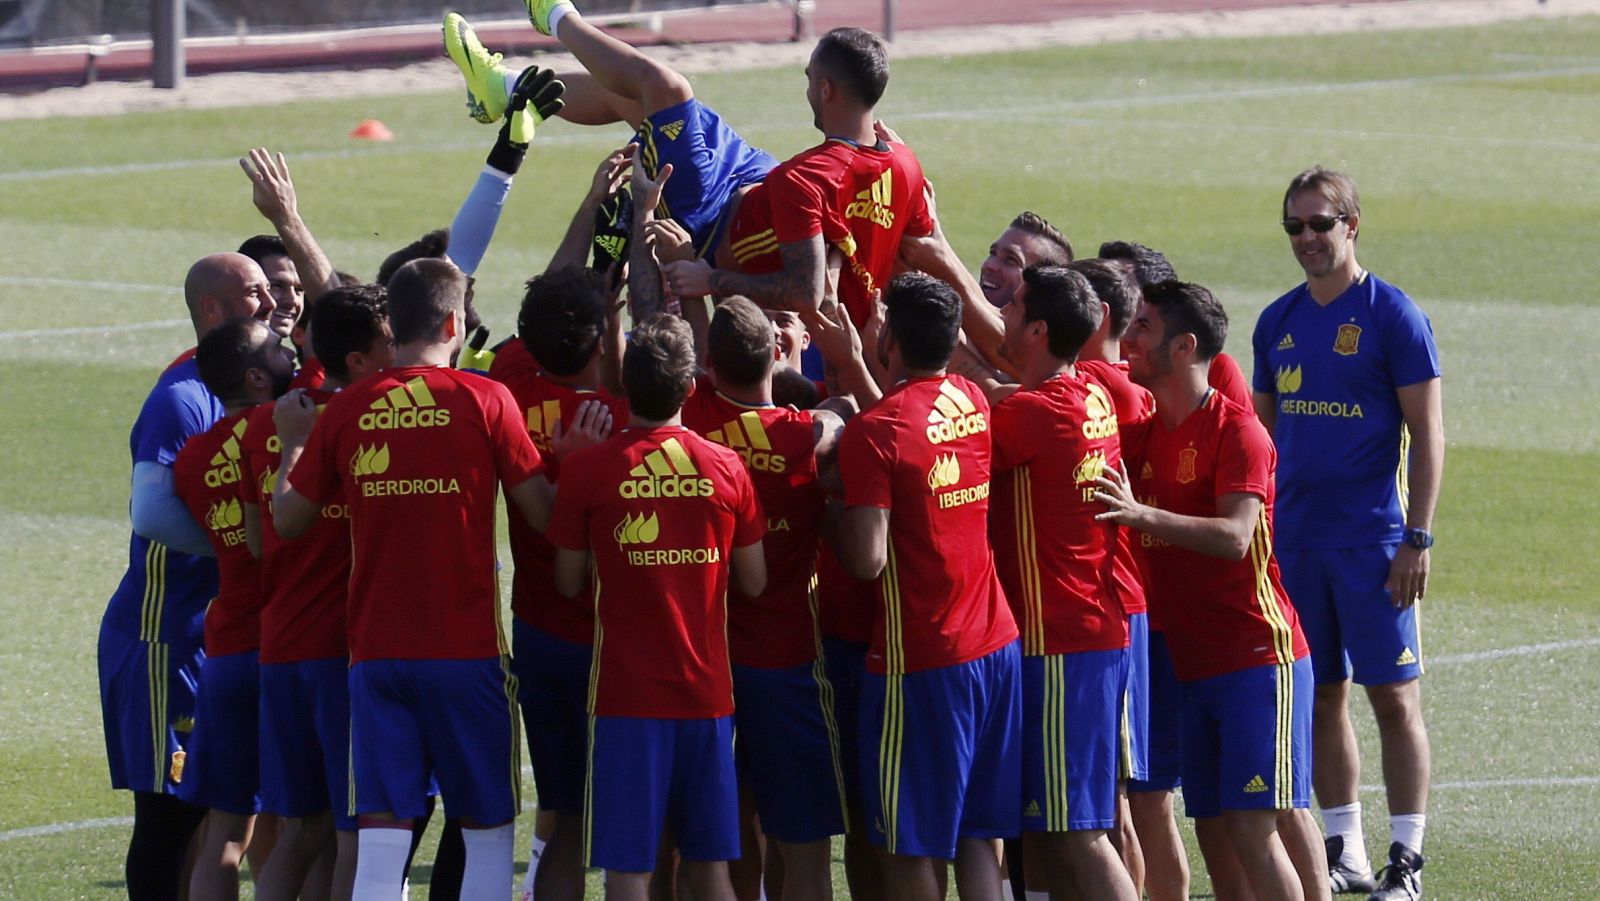 La selección española se enfrenta en partido amistoso a Bélgica